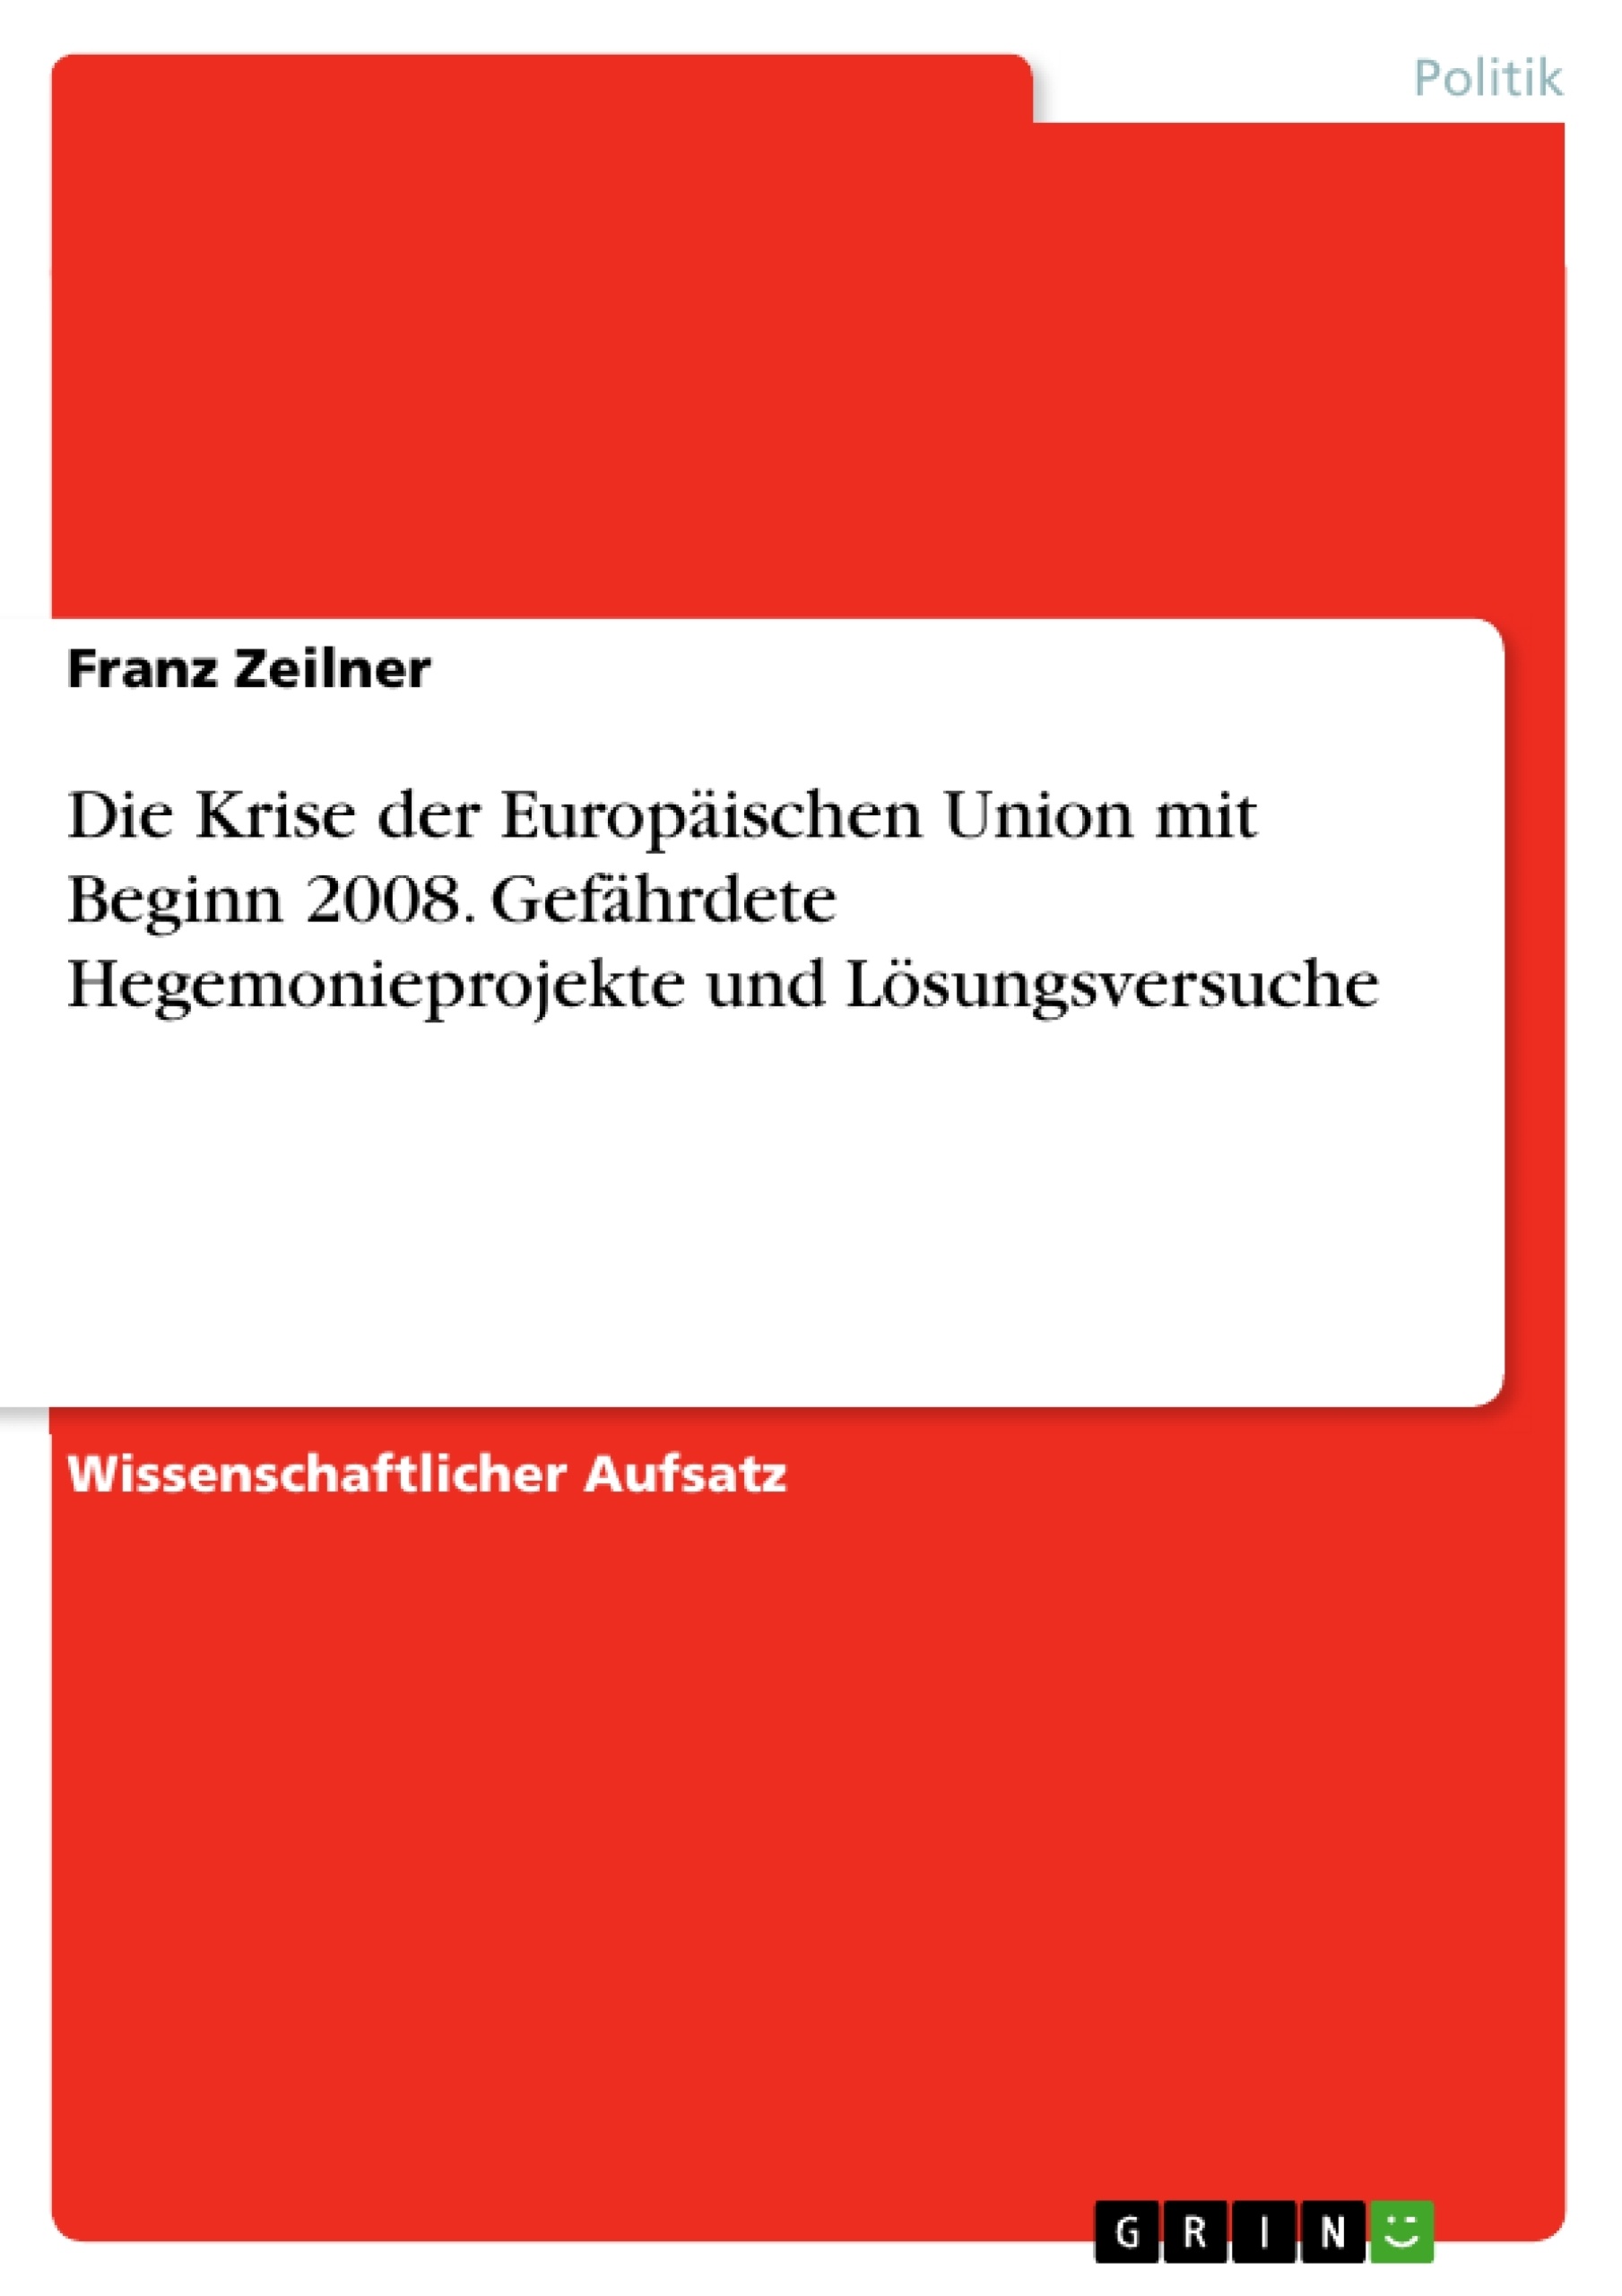 Title: Die Krise der Europäischen Union mit Beginn 2008. Gefährdete Hegemonieprojekte und Lösungsversuche